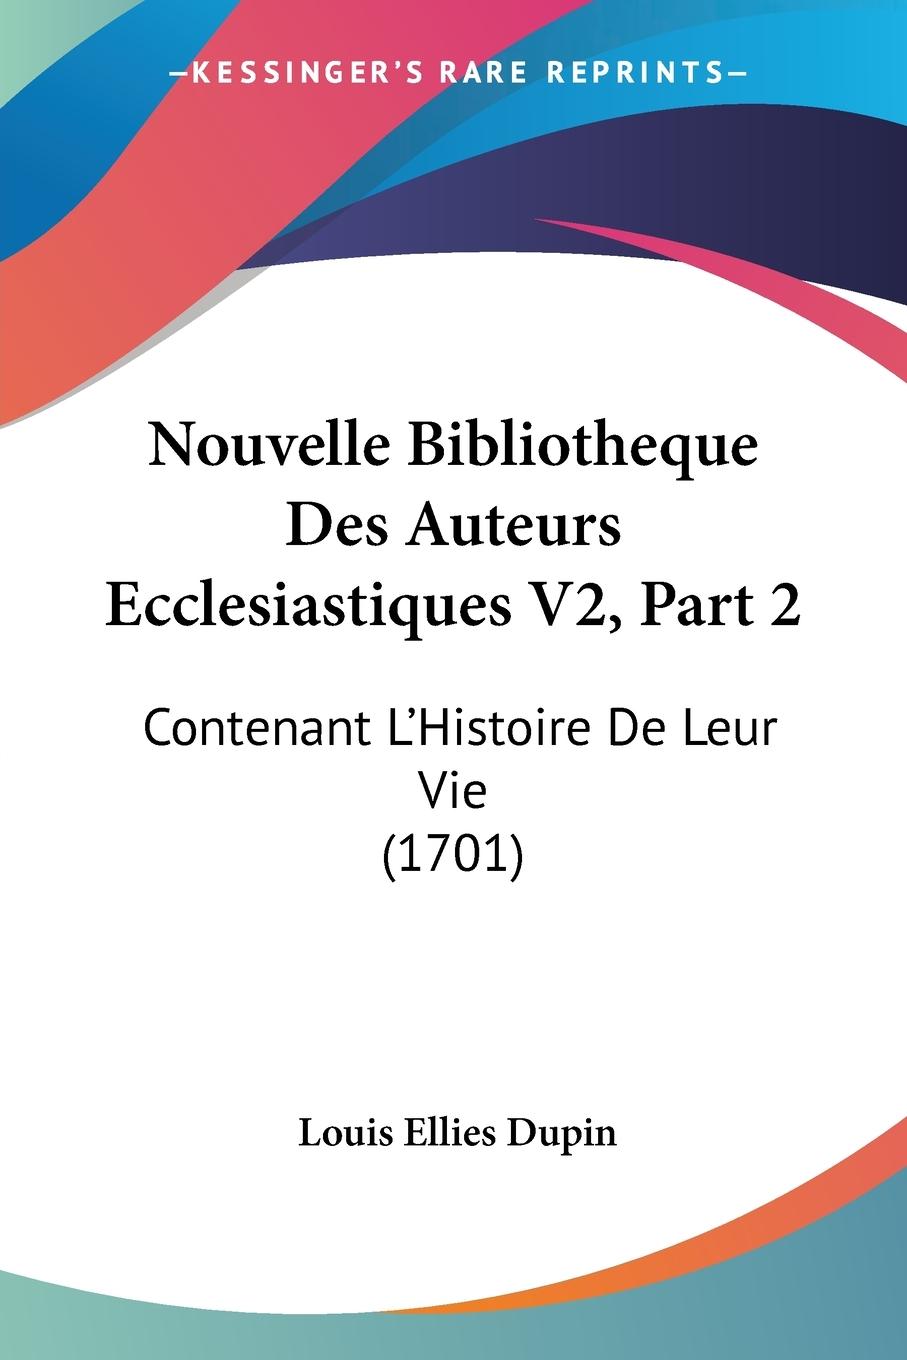 Nouvelle Bibliotheque Des Auteurs Ecclesiastiques V2, Part 2 - Dupin, Louis Ellies